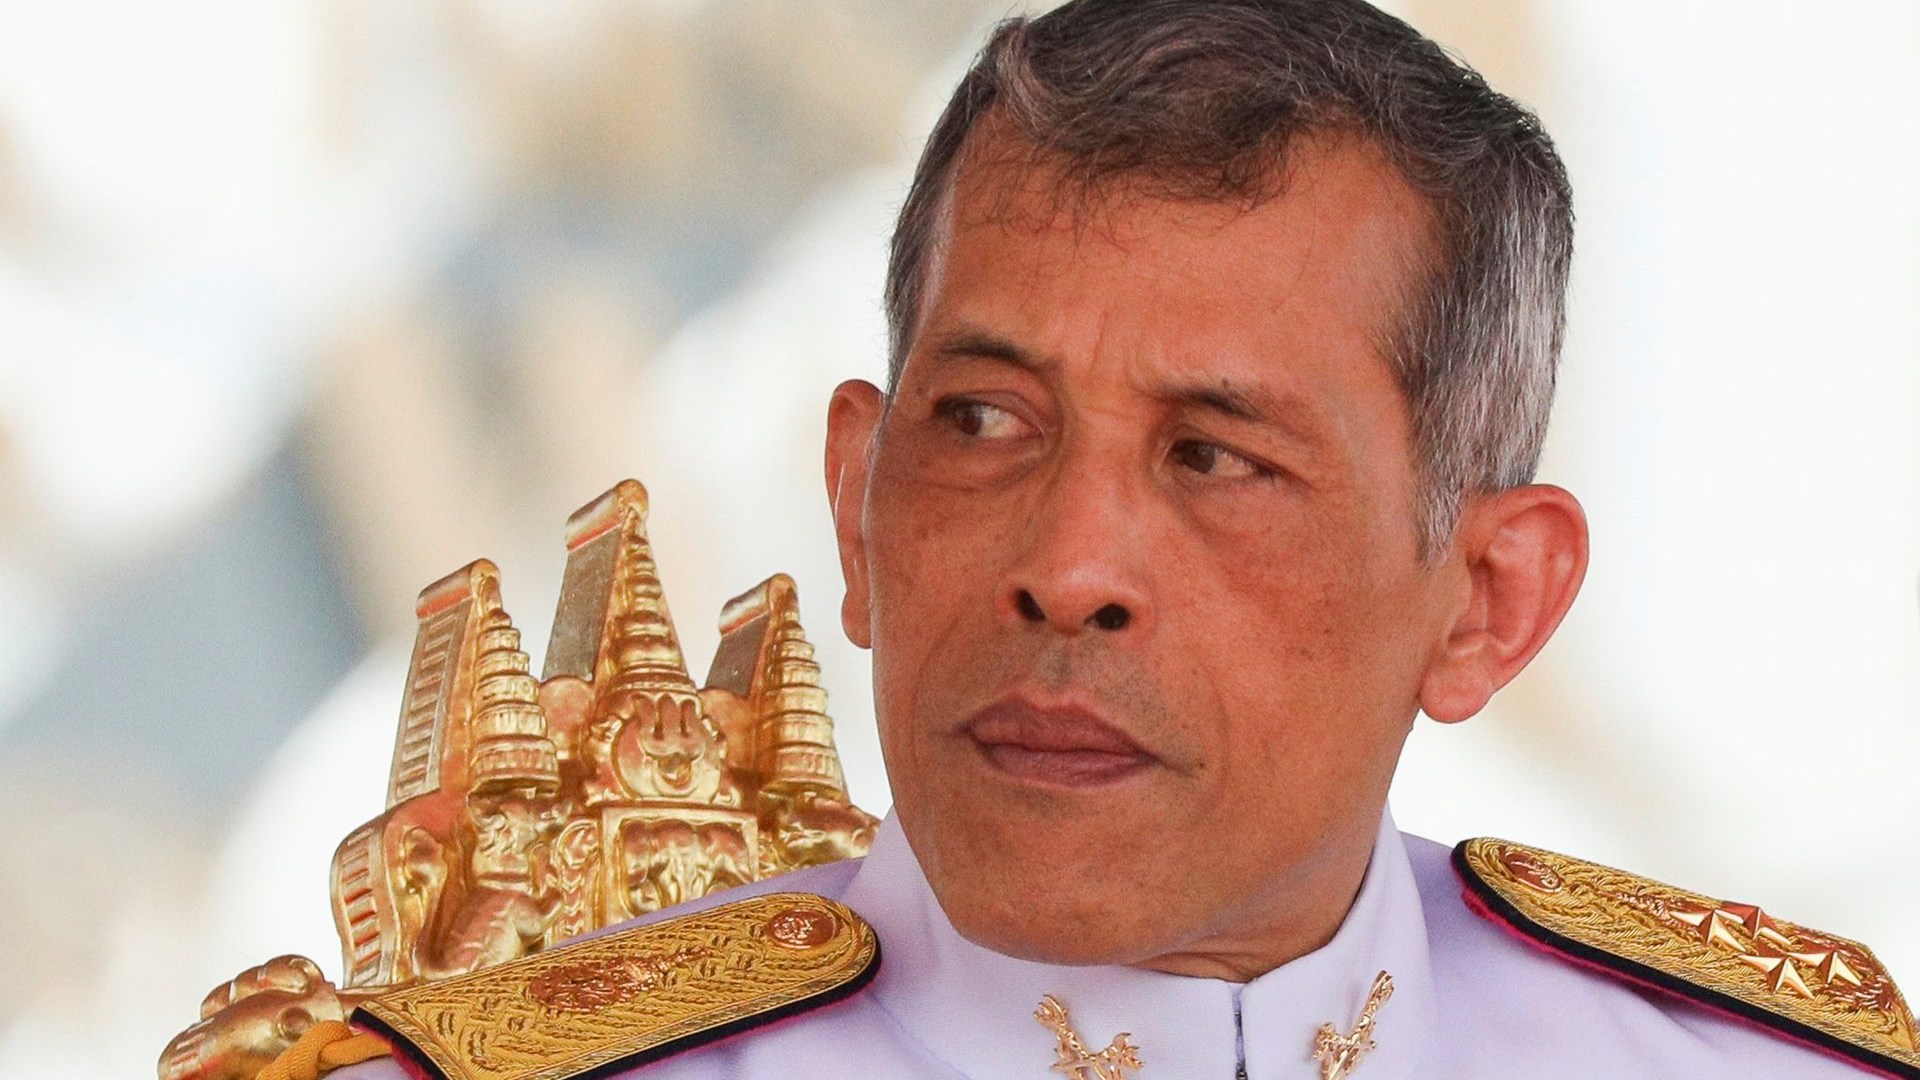 Ένας 14χρονος ύποπτος για την επίθεση με πλαστικές σφαίρες κατά του βασιλιά της Ταϊλάνδης